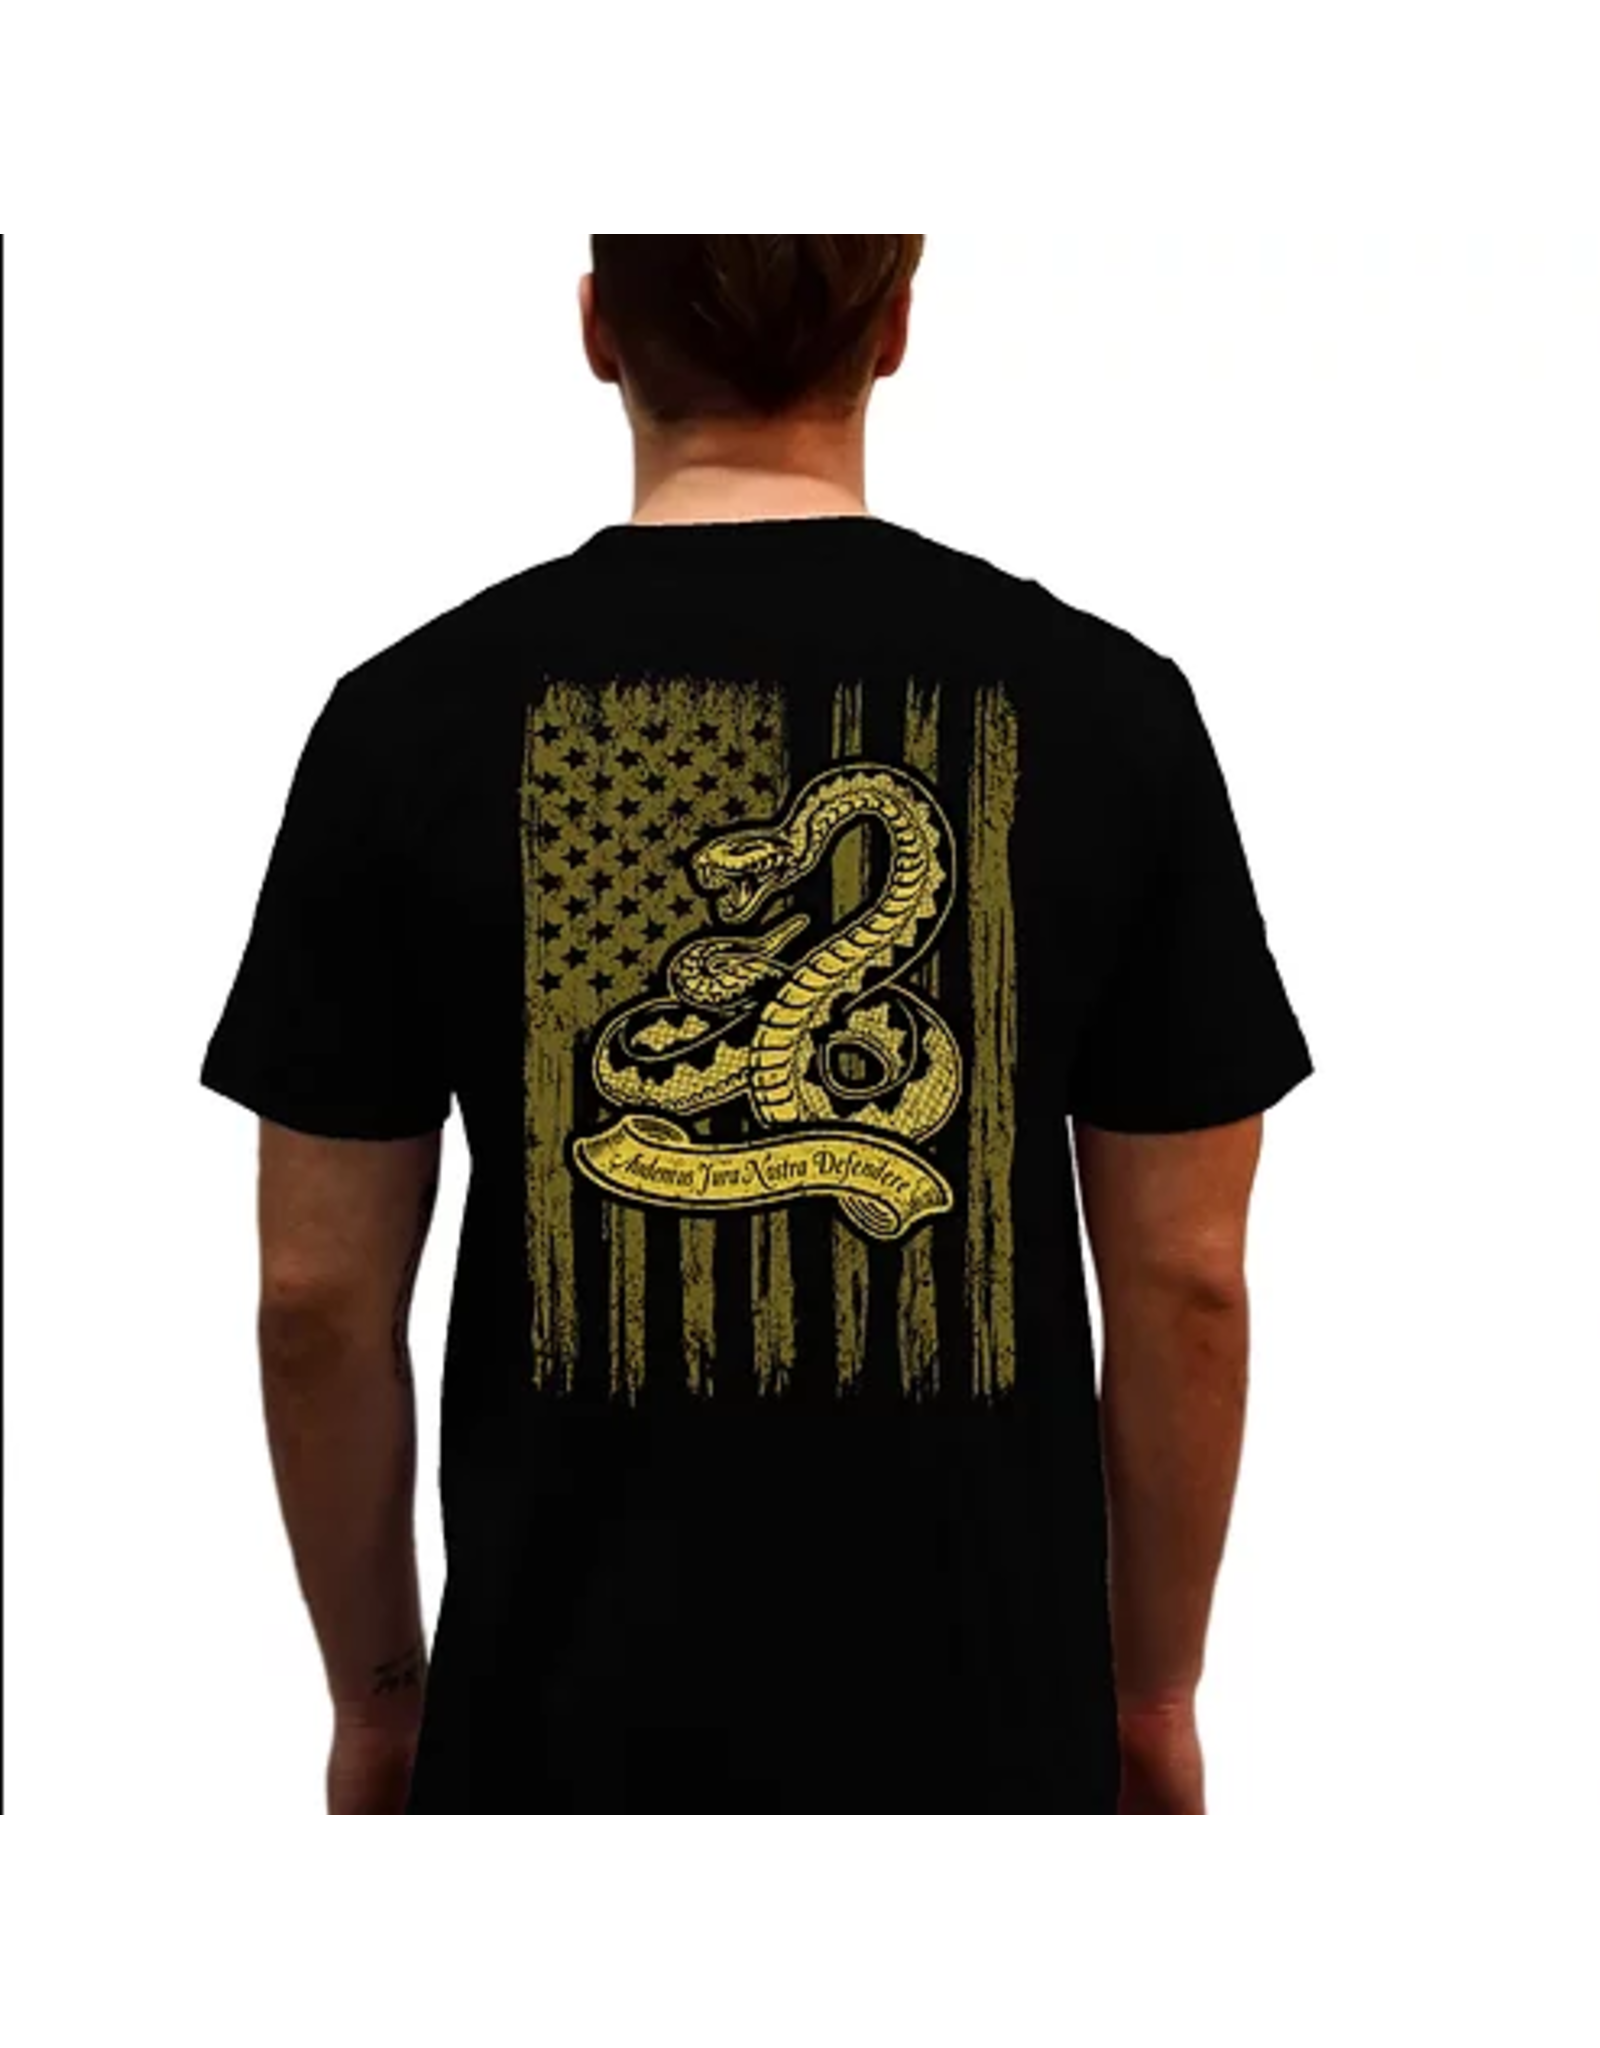 Liberty Wear Men's Gadsden 6578 T-Shirt